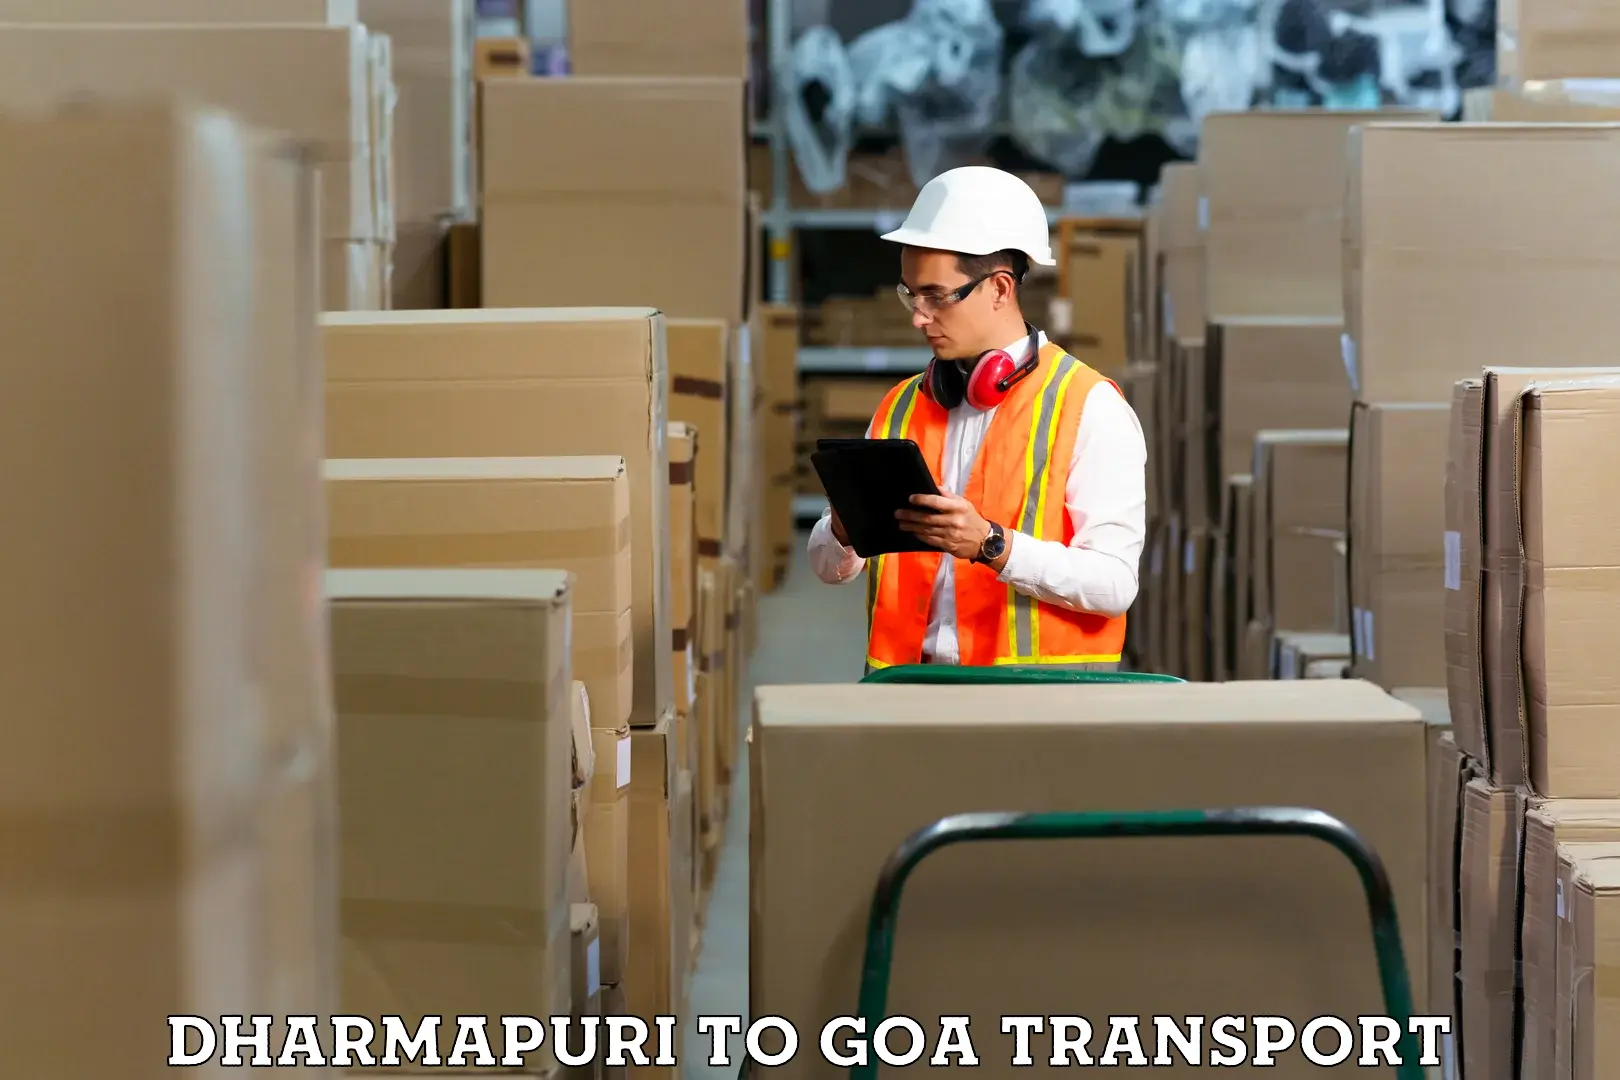 Container transport service Dharmapuri to Panjim